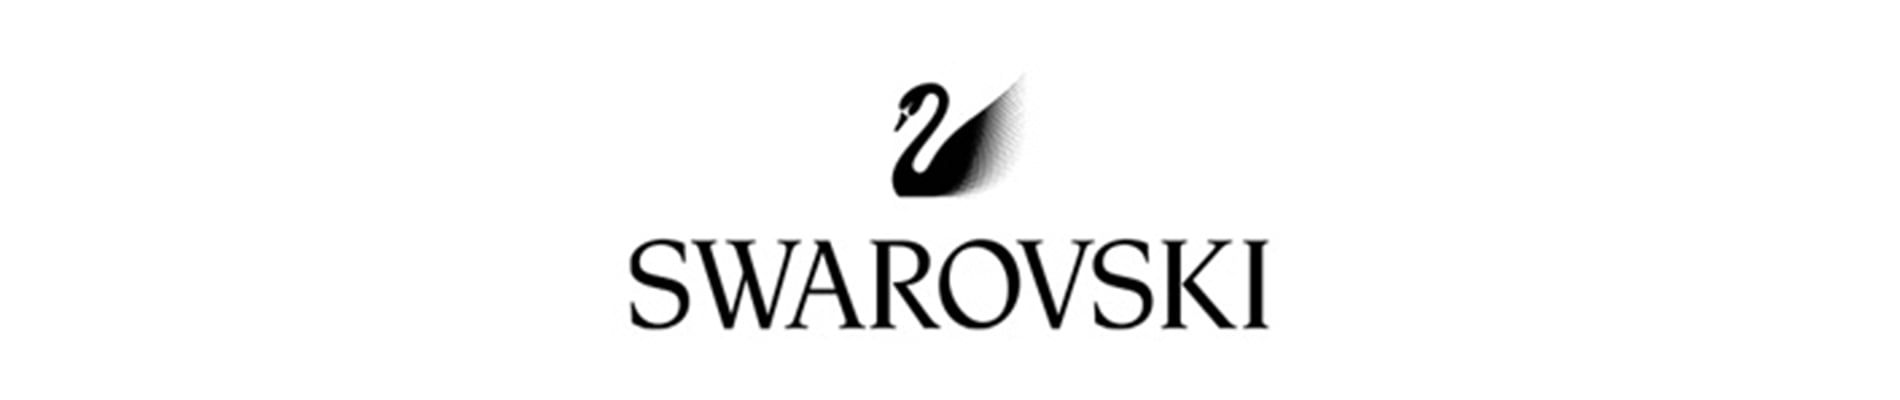 Swarovski designer frames header